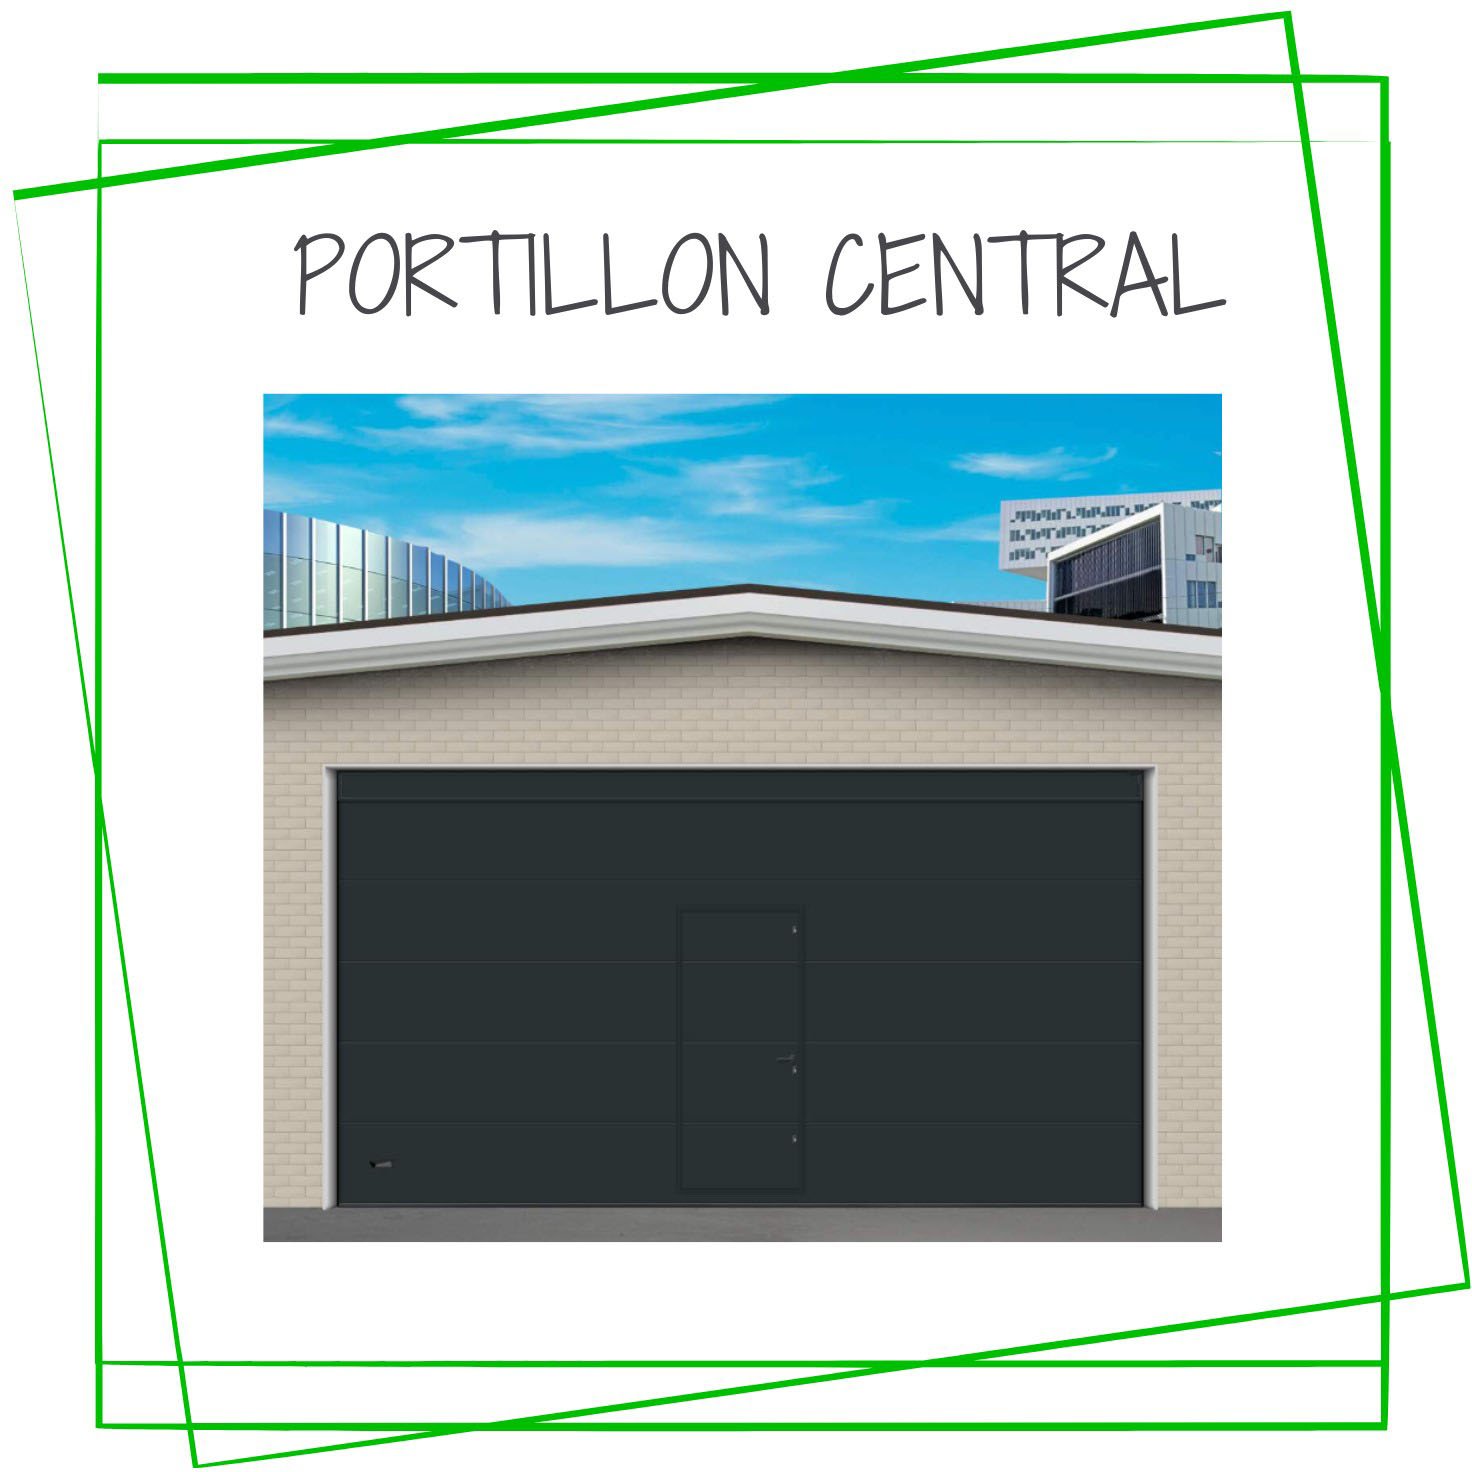 Portillon Central